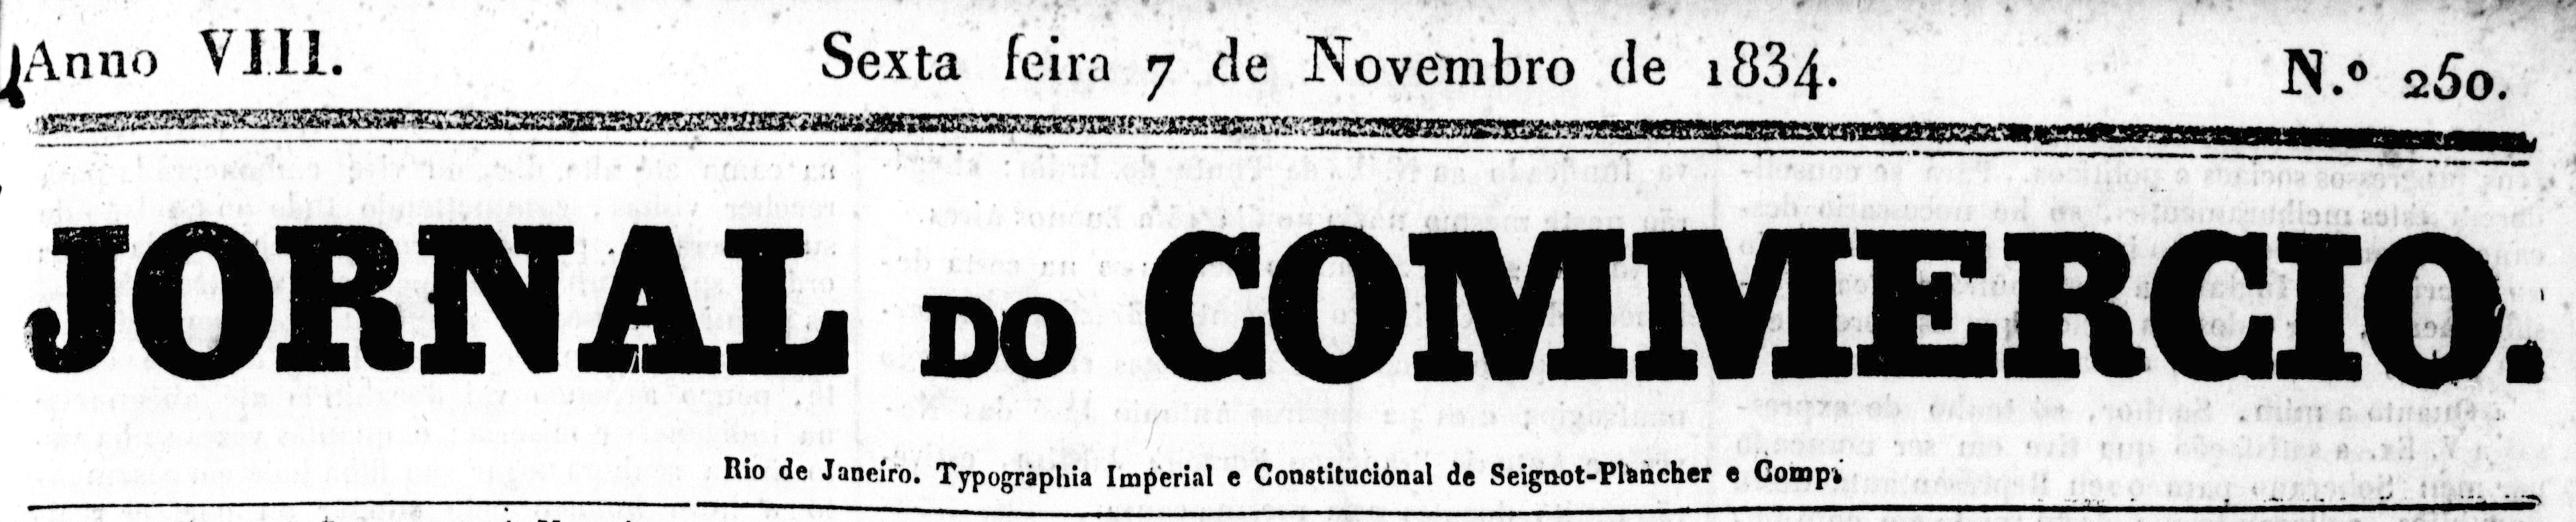 Cabeçalho do 'Jornal do Commercio', edição de 7 de novembro de 1834.